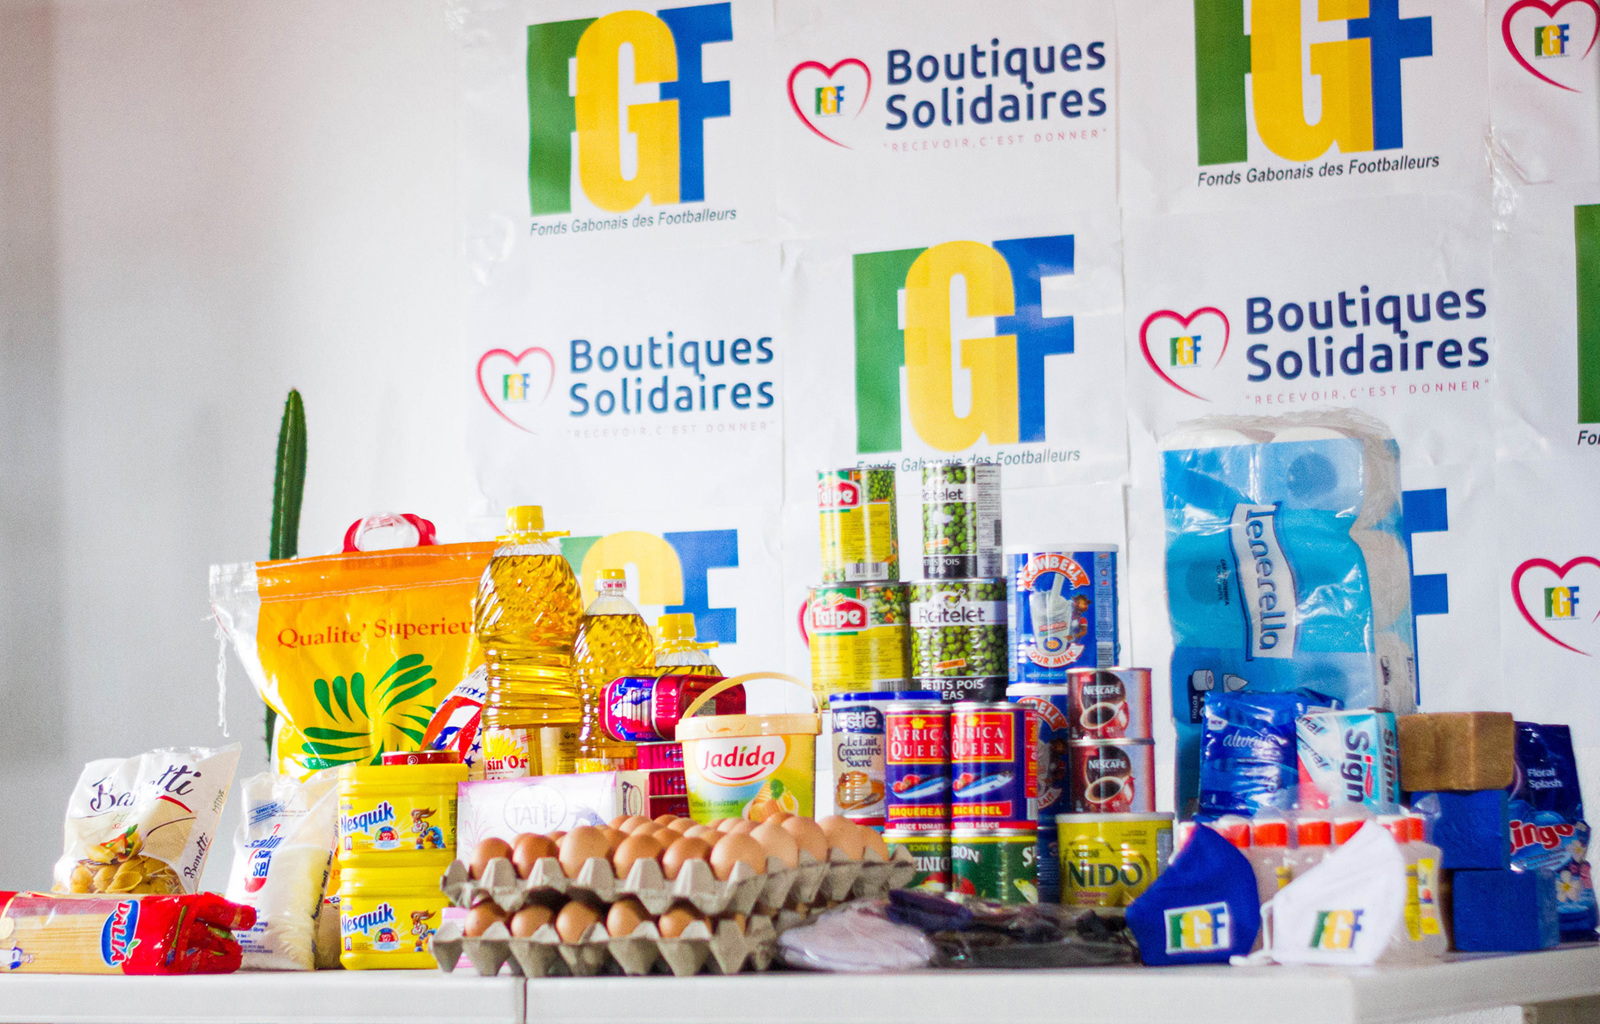 Gabon Boutigue Solidaire 2500 1600